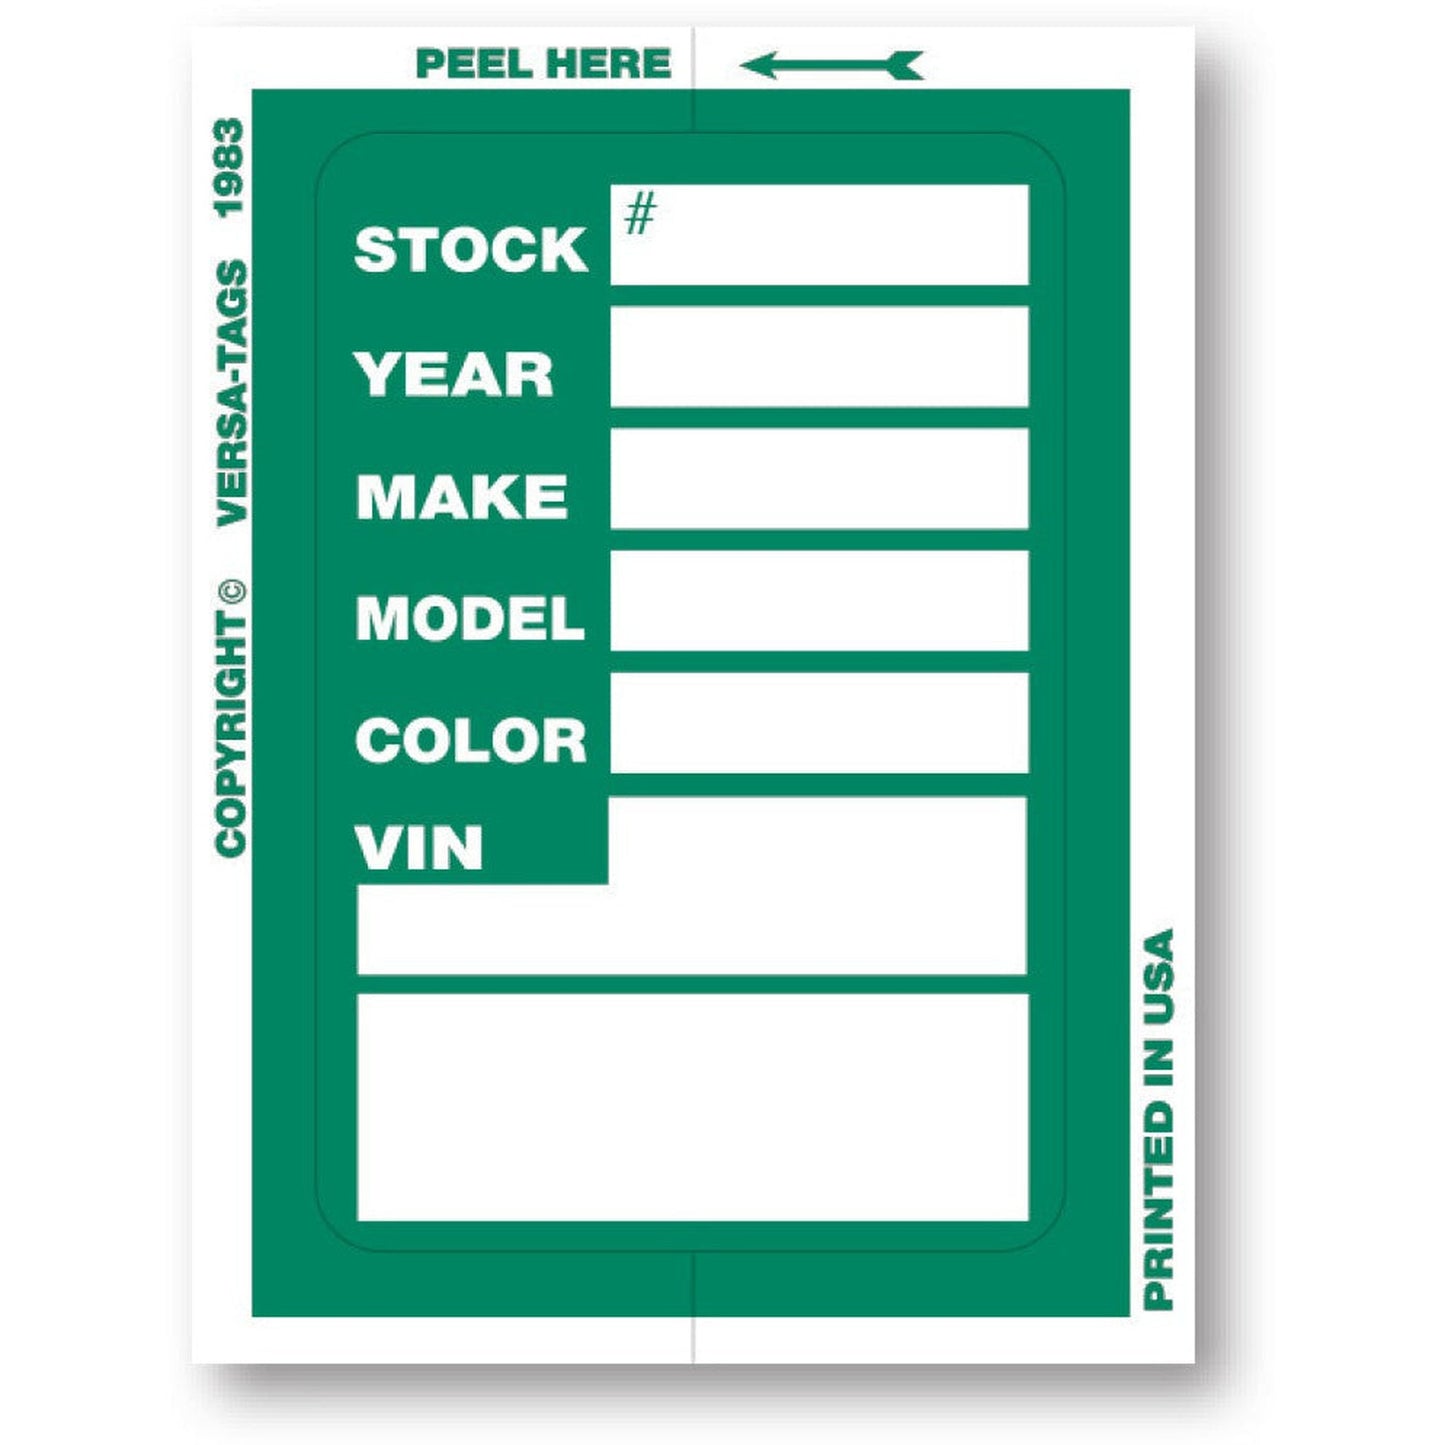 KLR-BAK "Clear Back" Window Sticker Tickets (Package of 100)